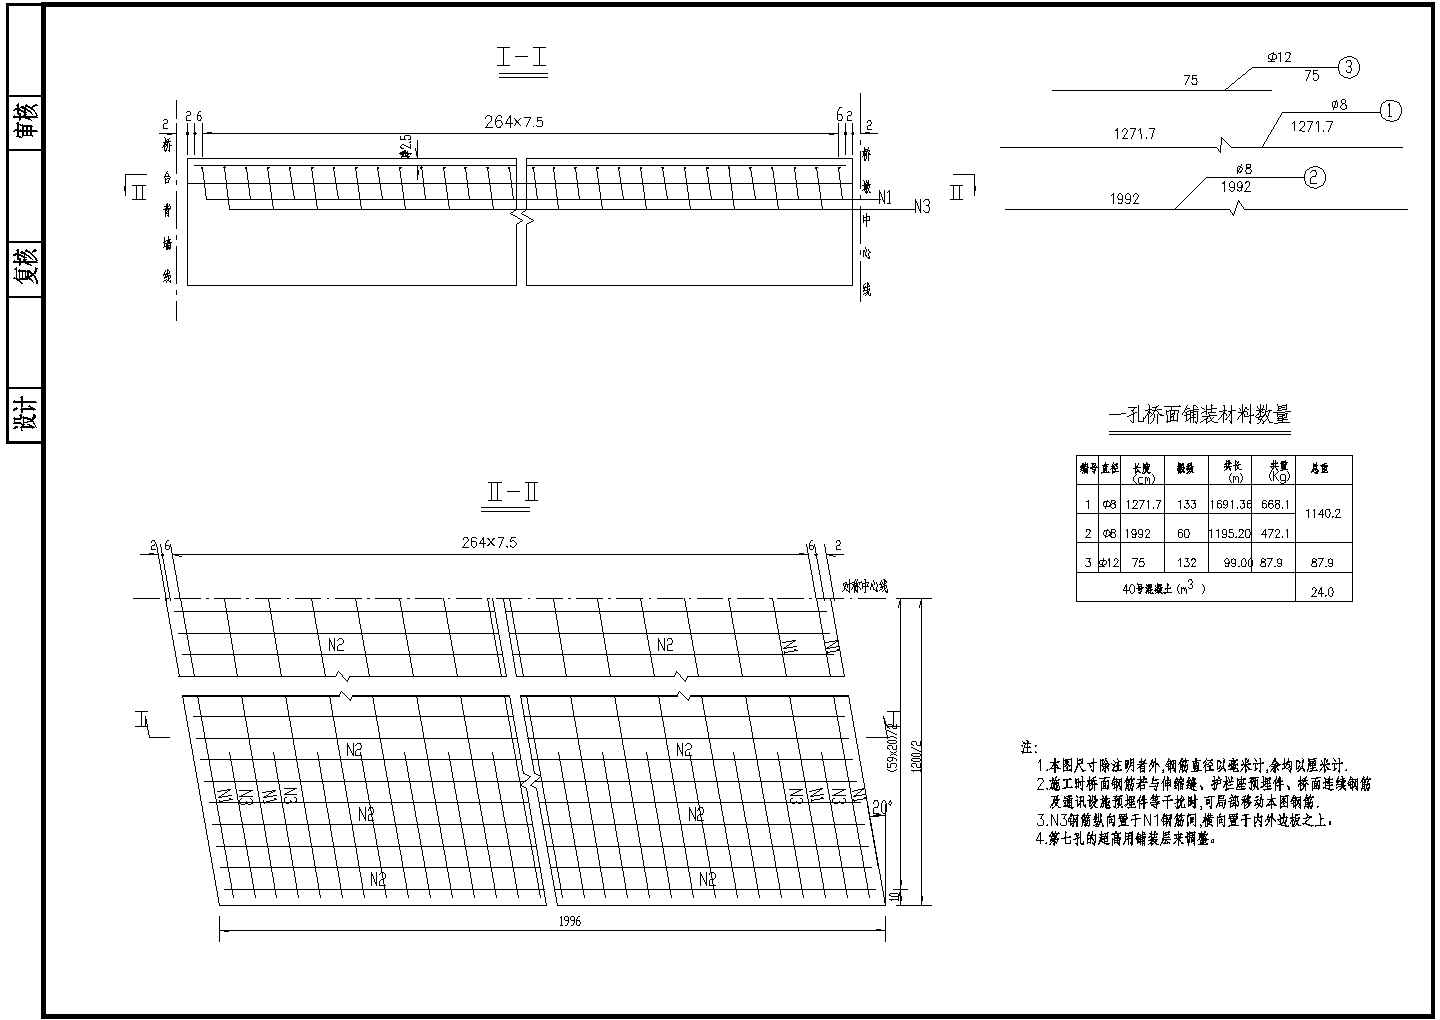 7x20m预应力混凝土空心板桥面钢筋节点详图设计